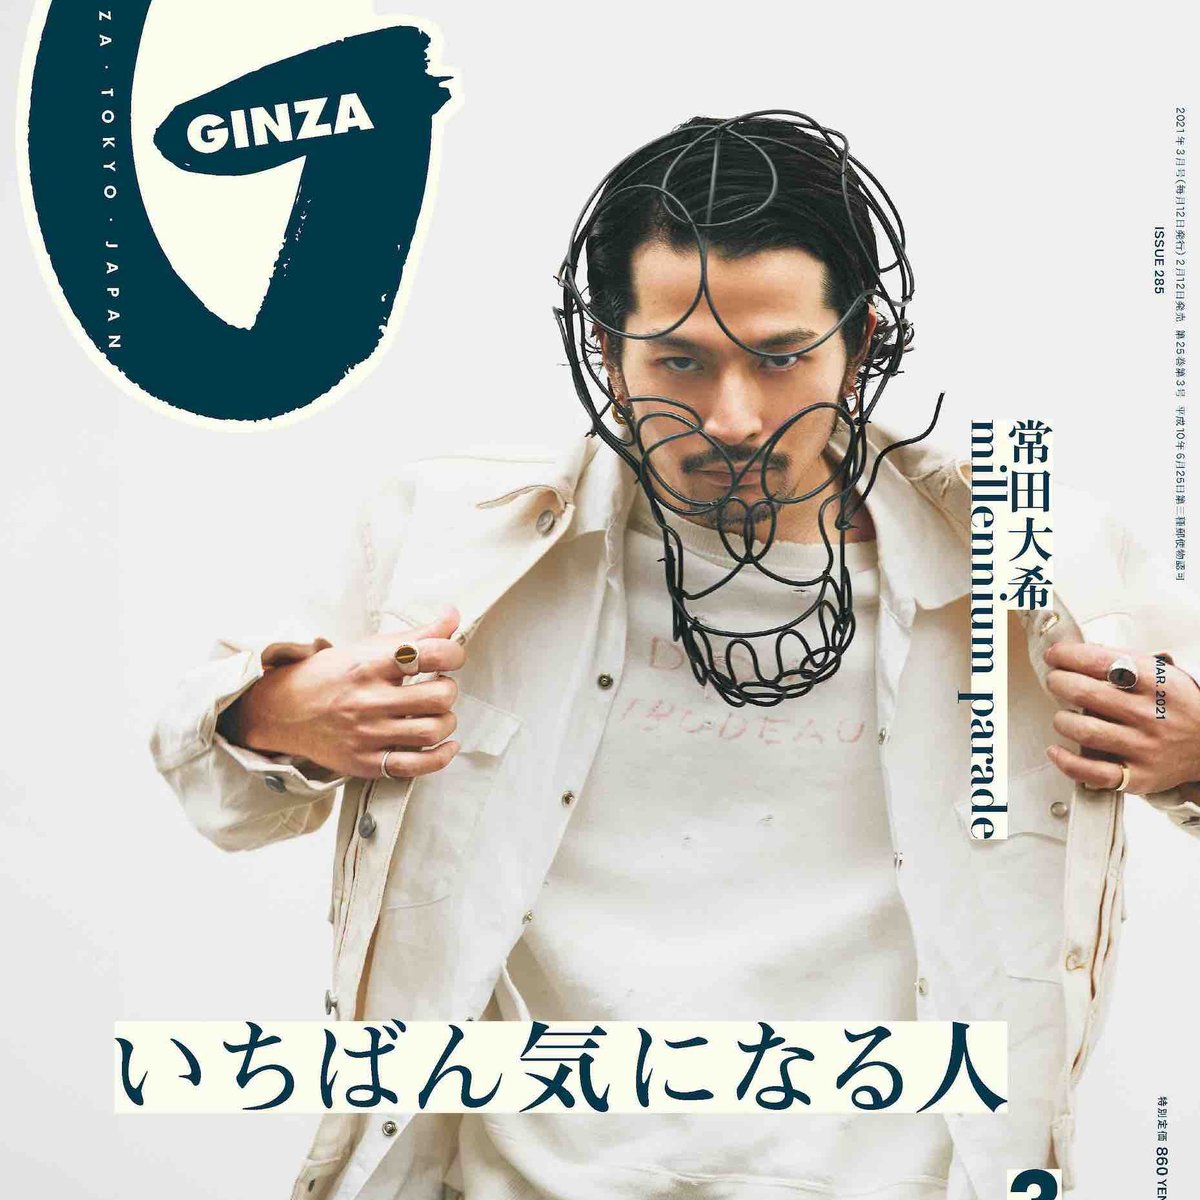 King Gnu常田大希、GINZA初の男性単独表紙に起用